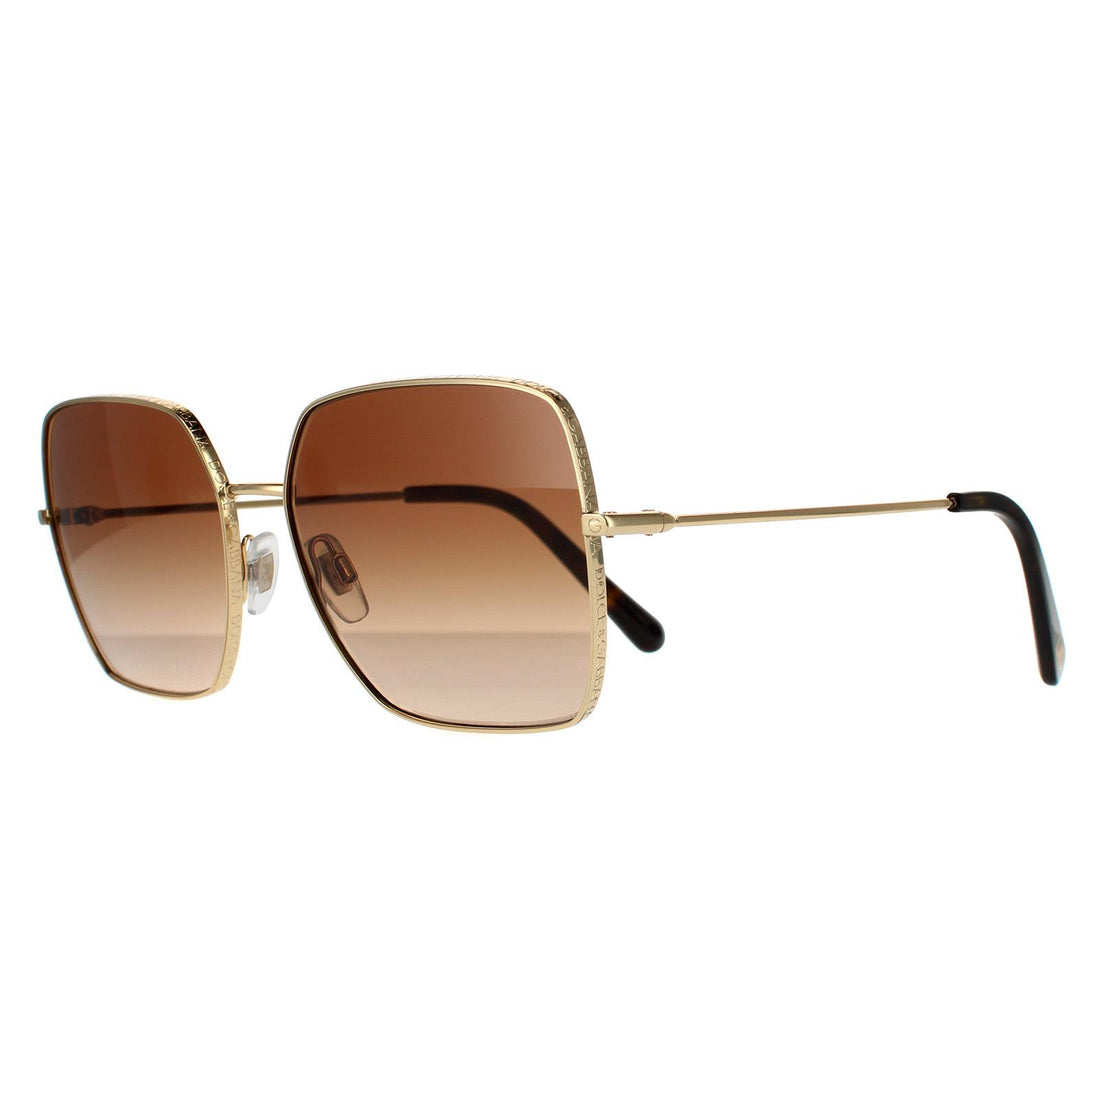 Dolce & Gabbana Sunglasses DG2242 02/13 Gold Dark Brown Gradient